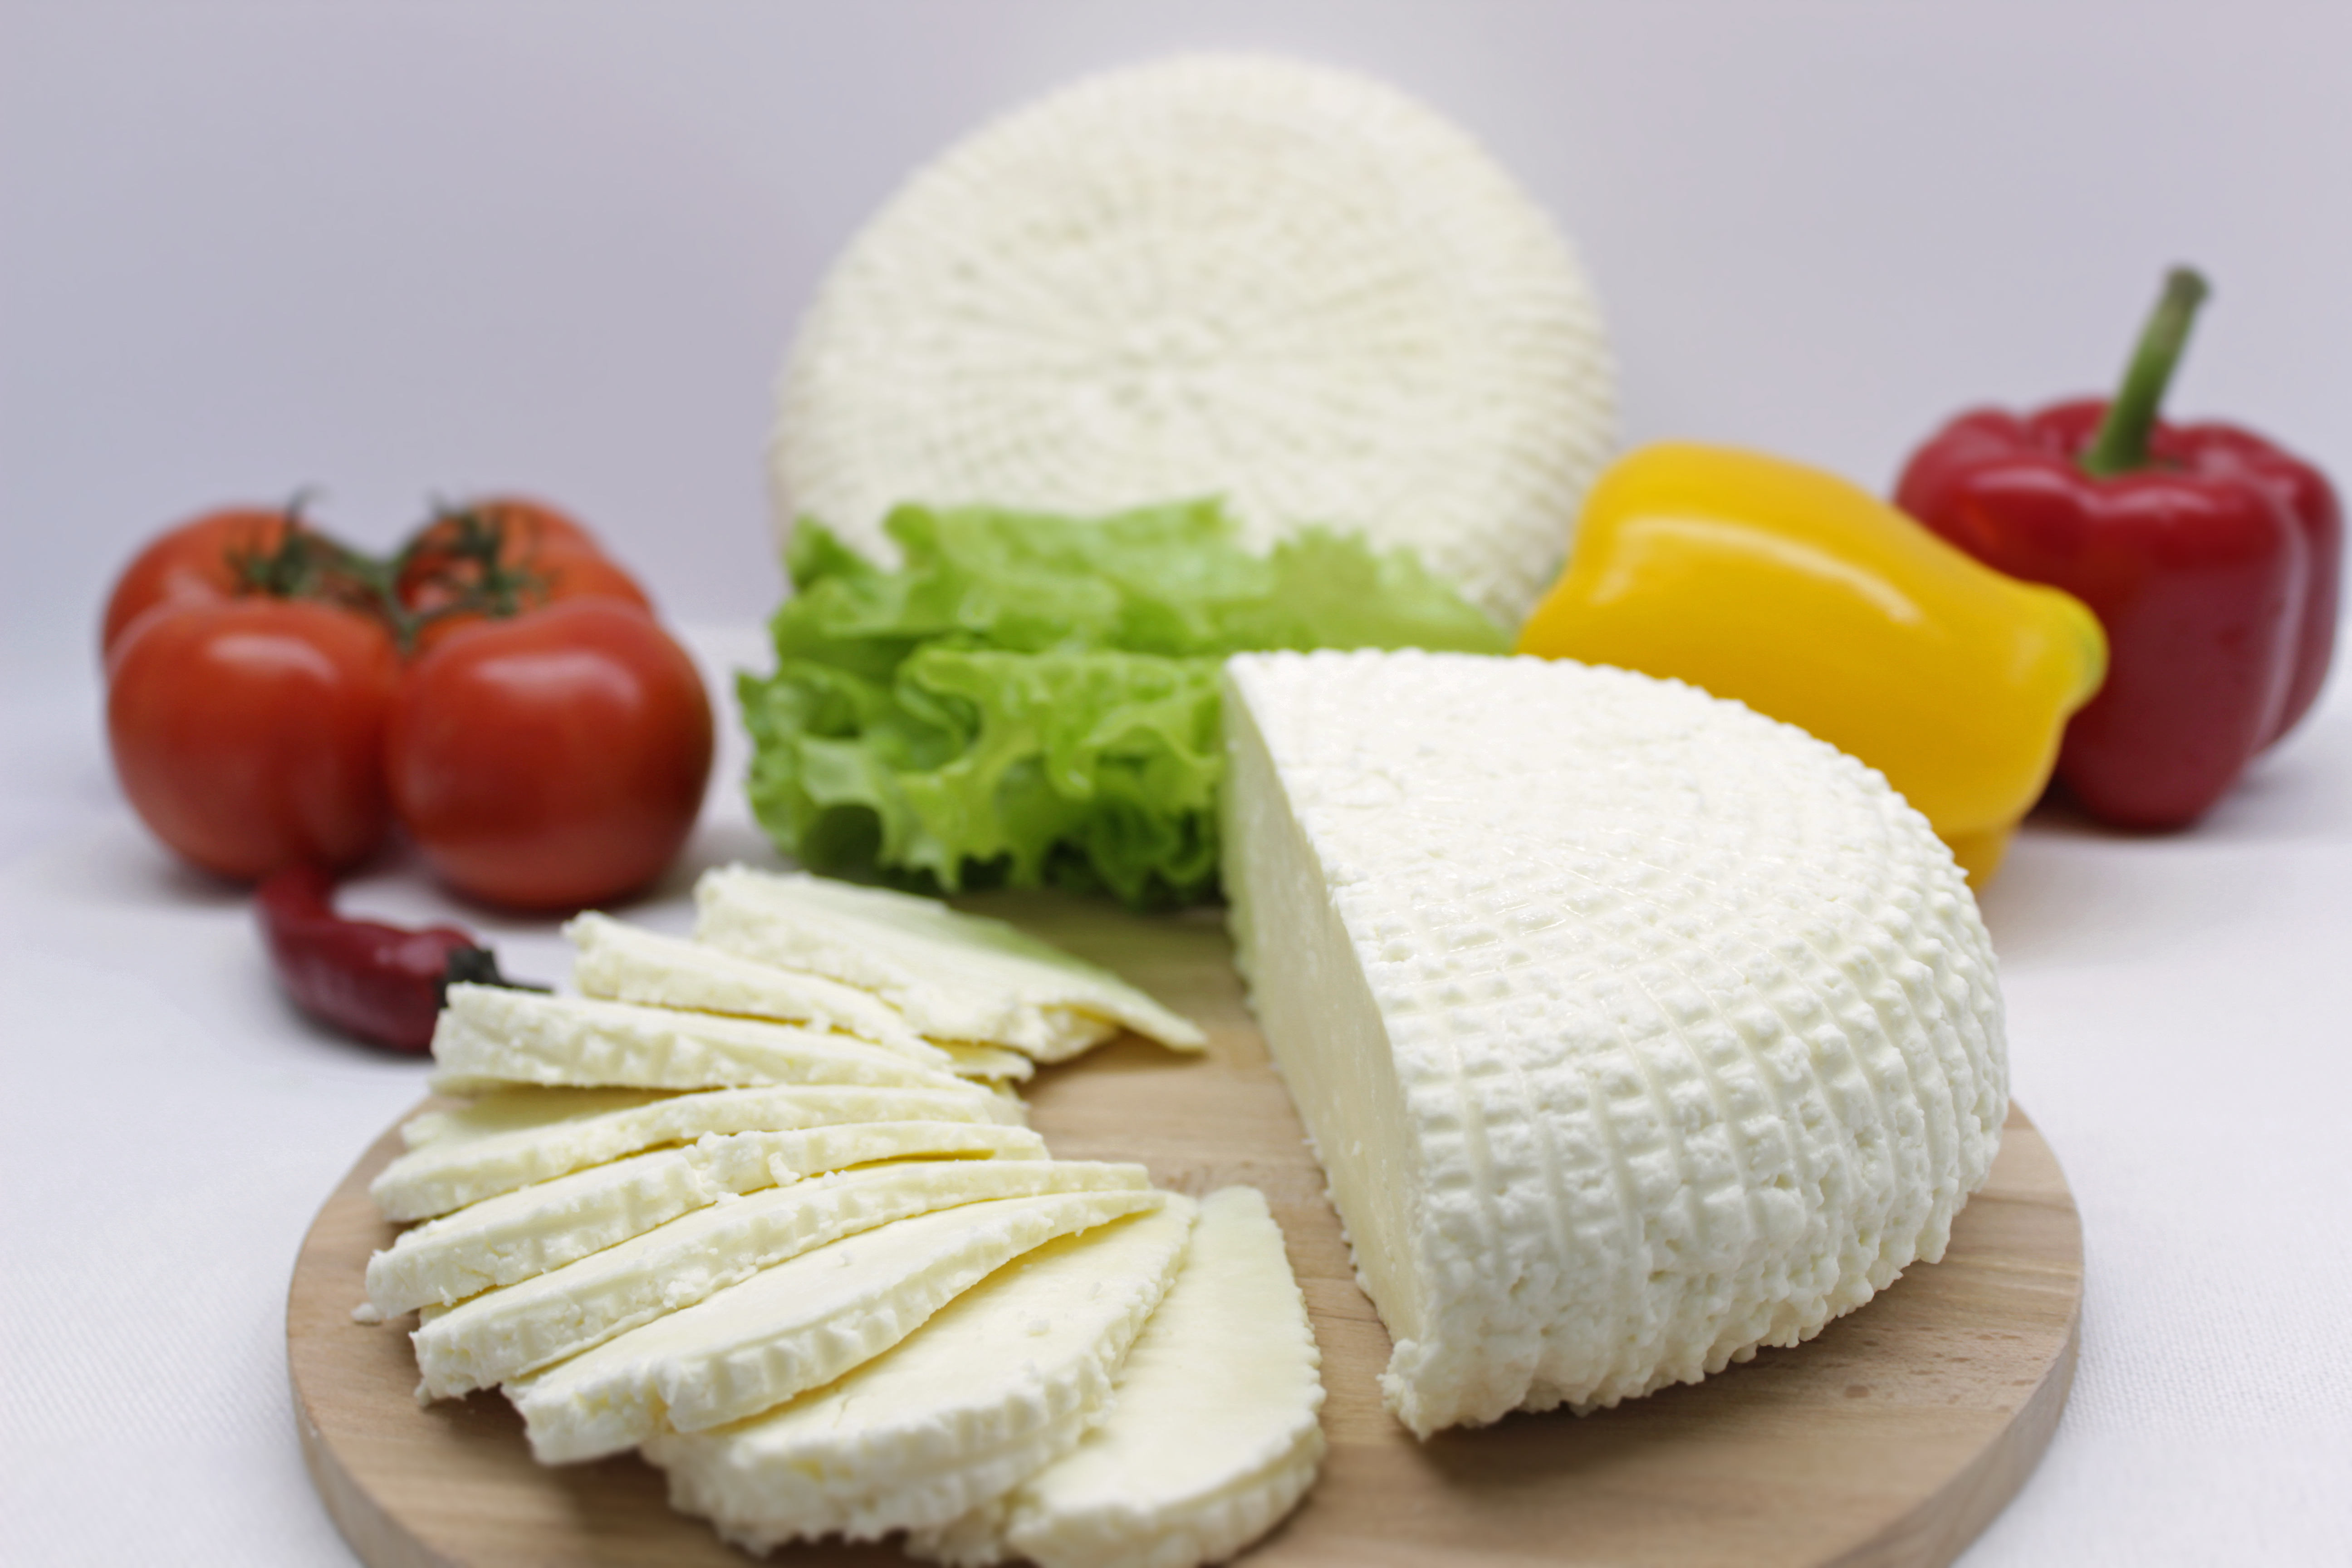 Суд по интеллектуальным правам отменил решение о производстве адыгейского сыра за пределами Адыгеи